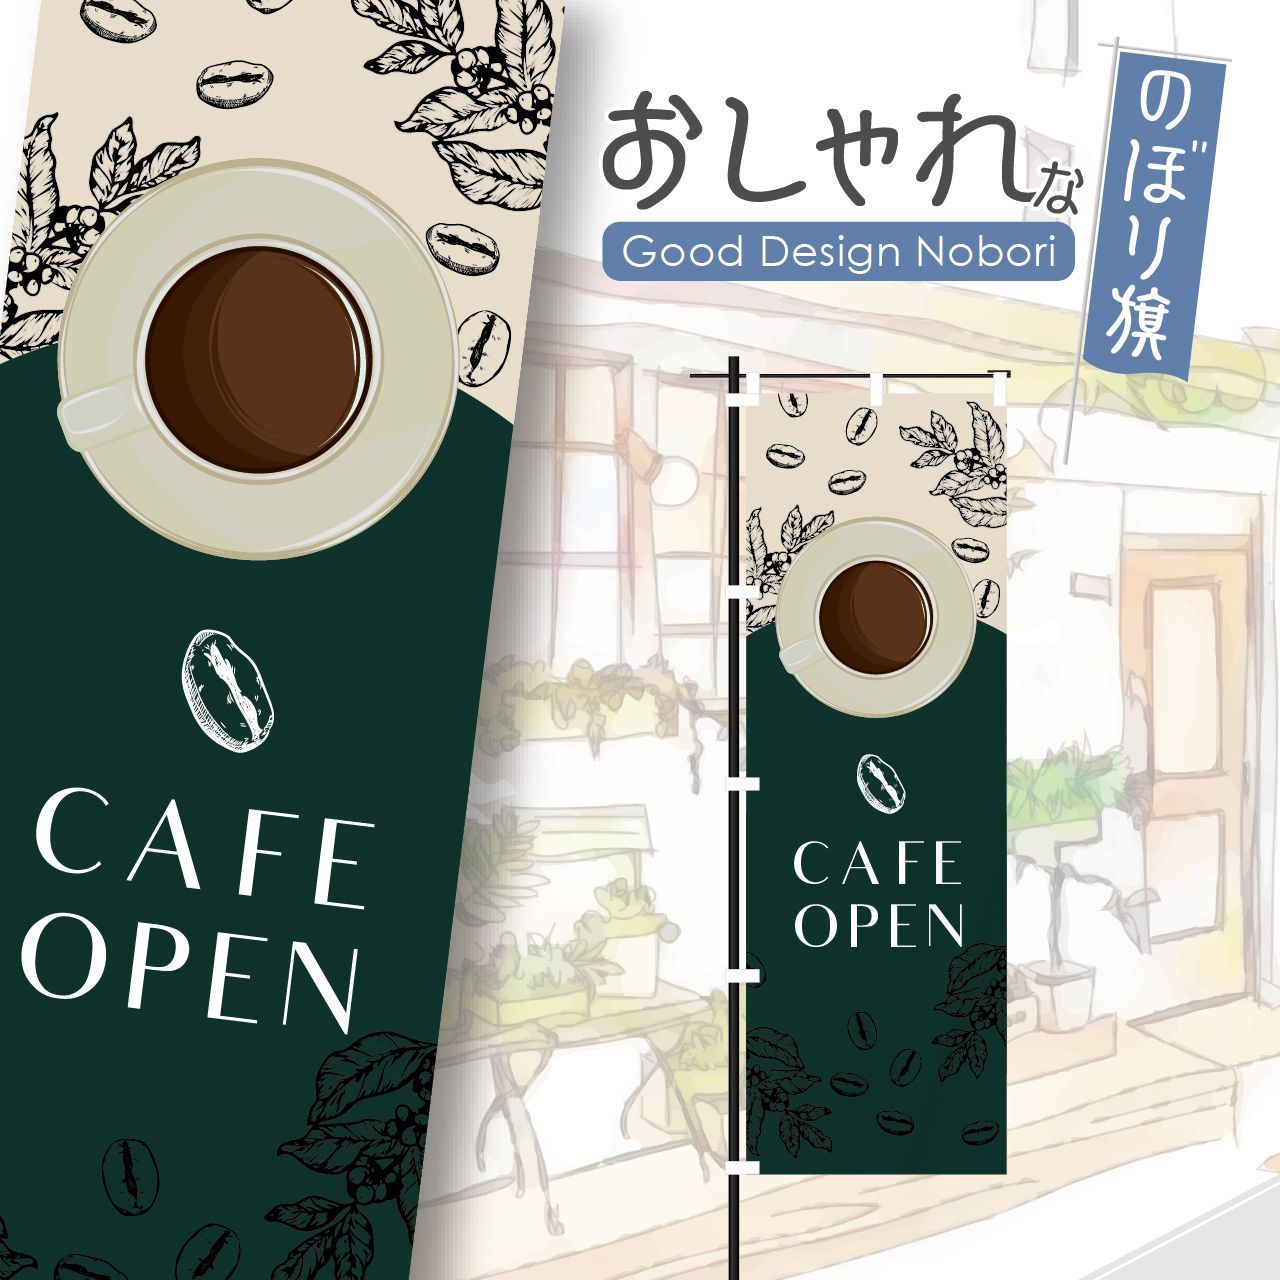 のぼり旗 2枚セット CAFE OPEN (カフェオープン) AKB-287 - 店舗用品